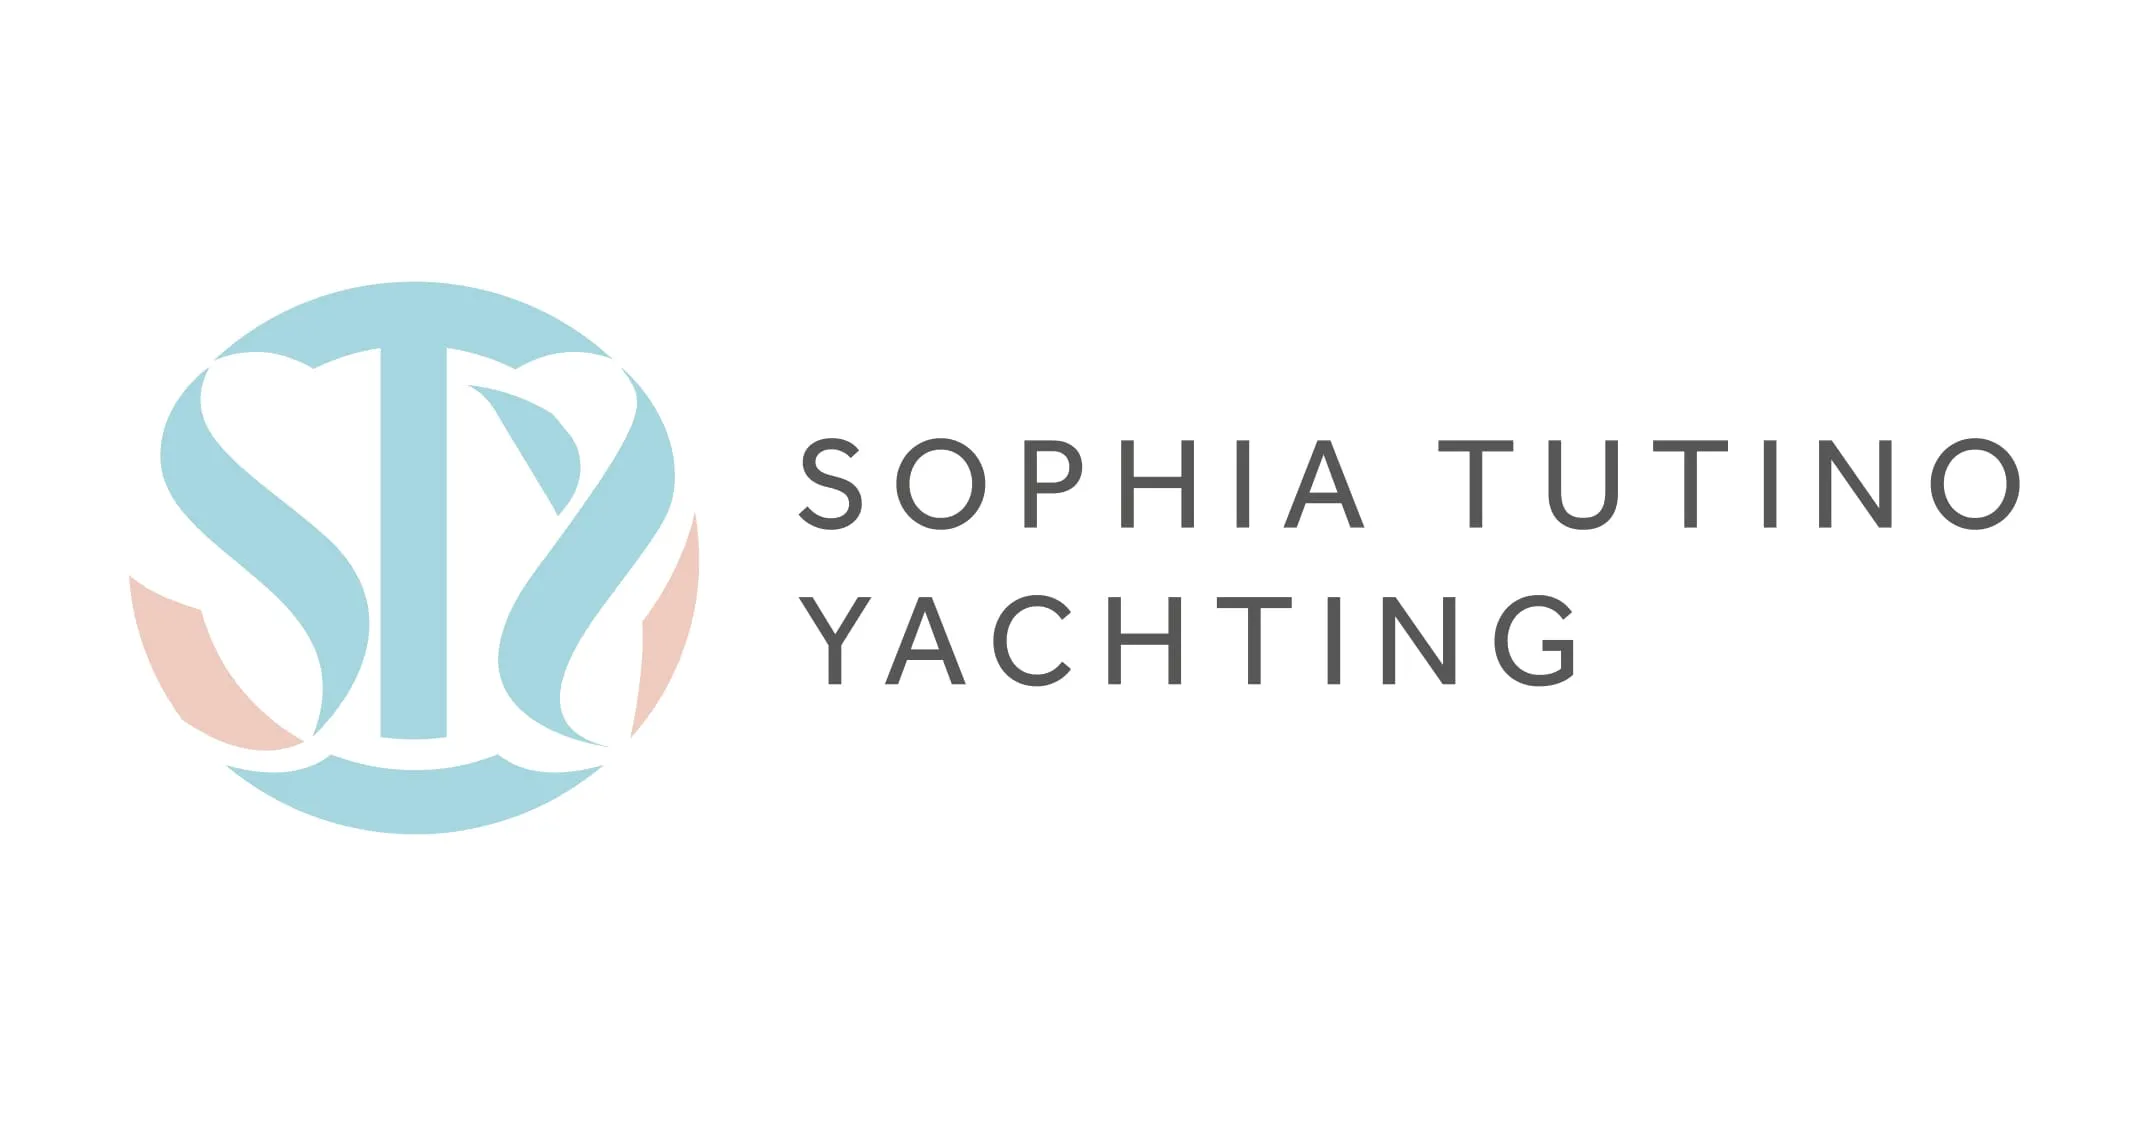 Sophia tuting yachting